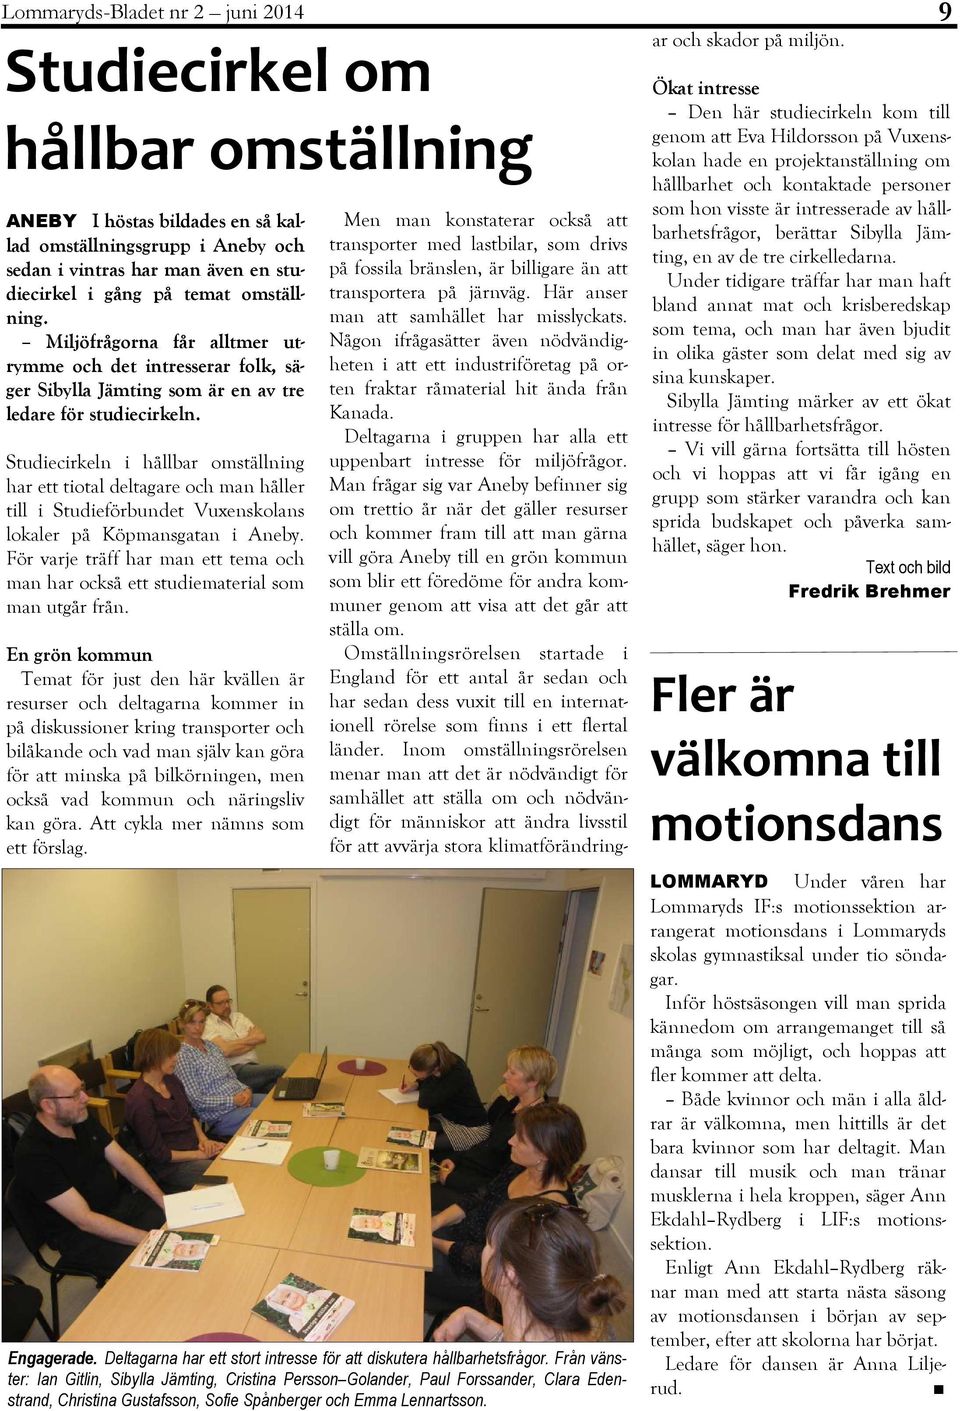 Studiecirkeln i hållbar omställning har ett tiotal deltagare och man håller till i Studieförbundet Vuxenskolans lokaler på Köpmansgatan i Aneby.